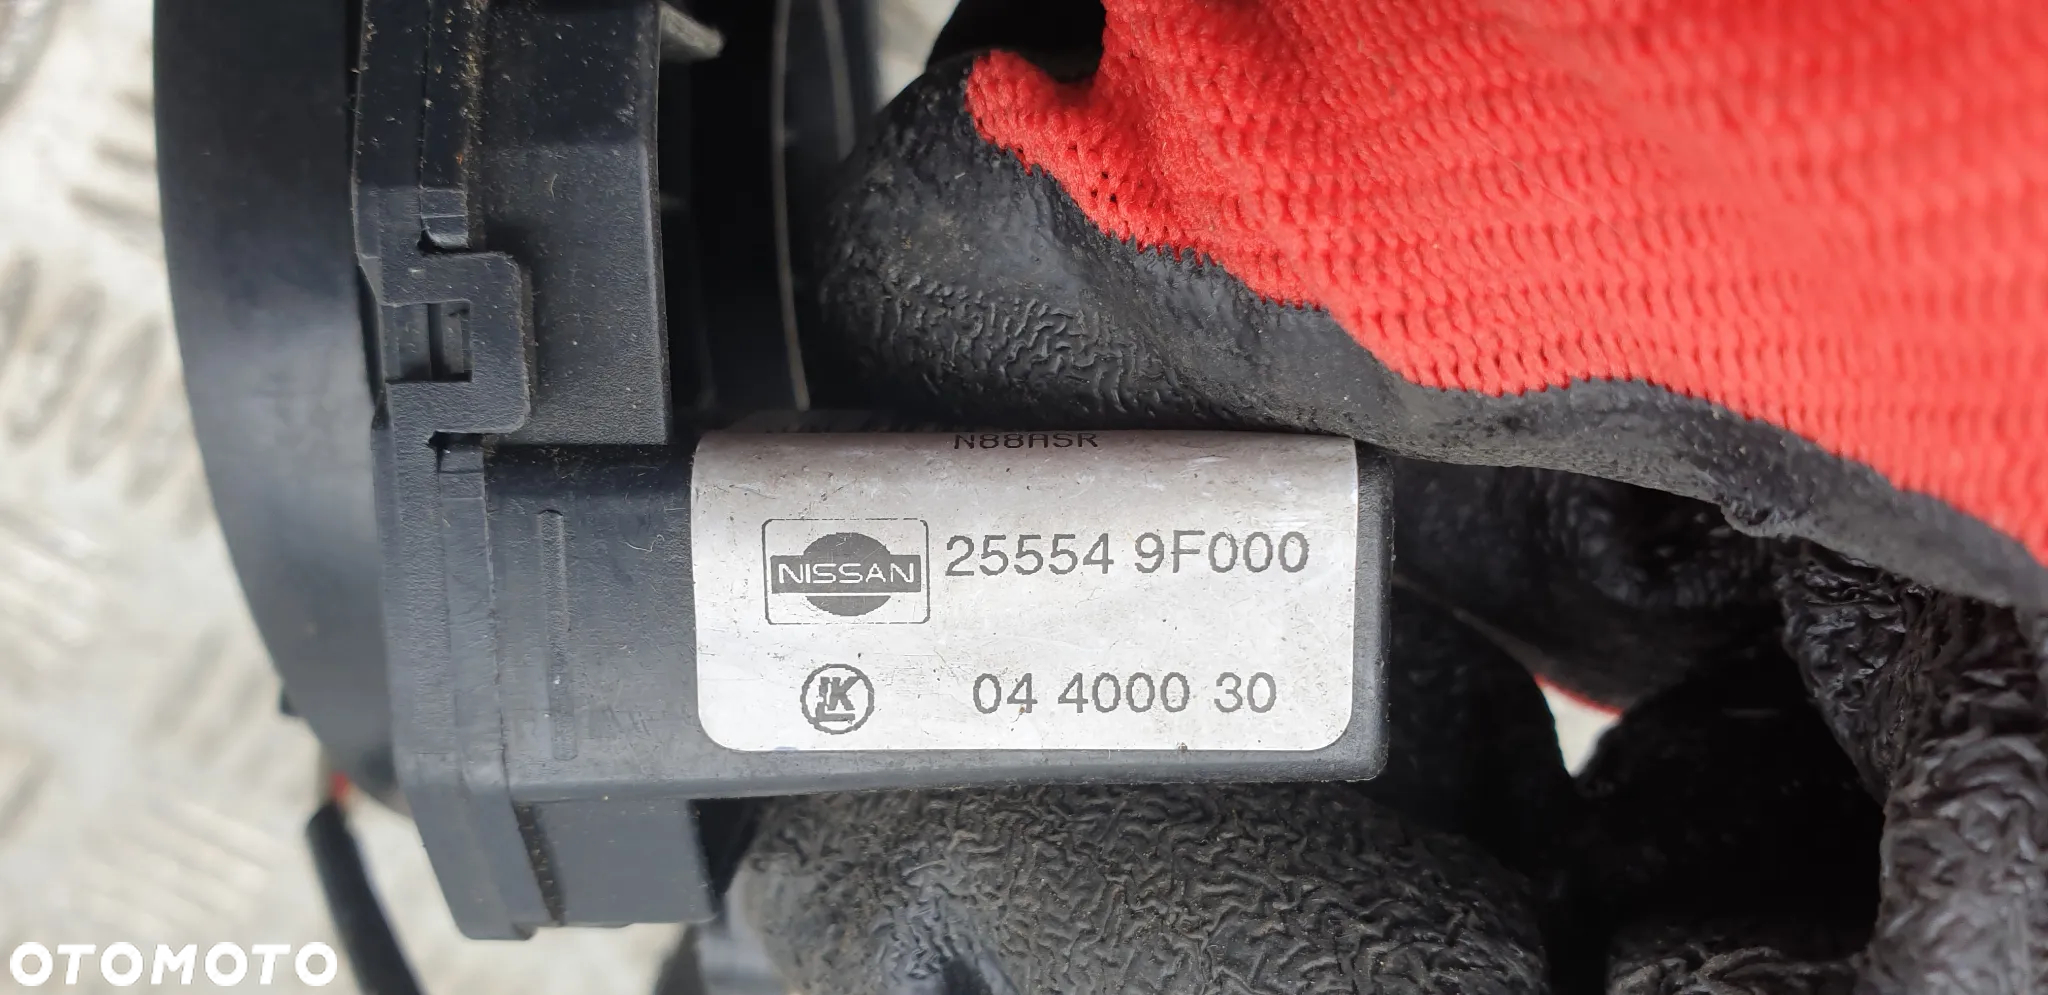 NISSAN MICRA K11 tasma airbag pod kierownice zwijak 255549f000 - 3